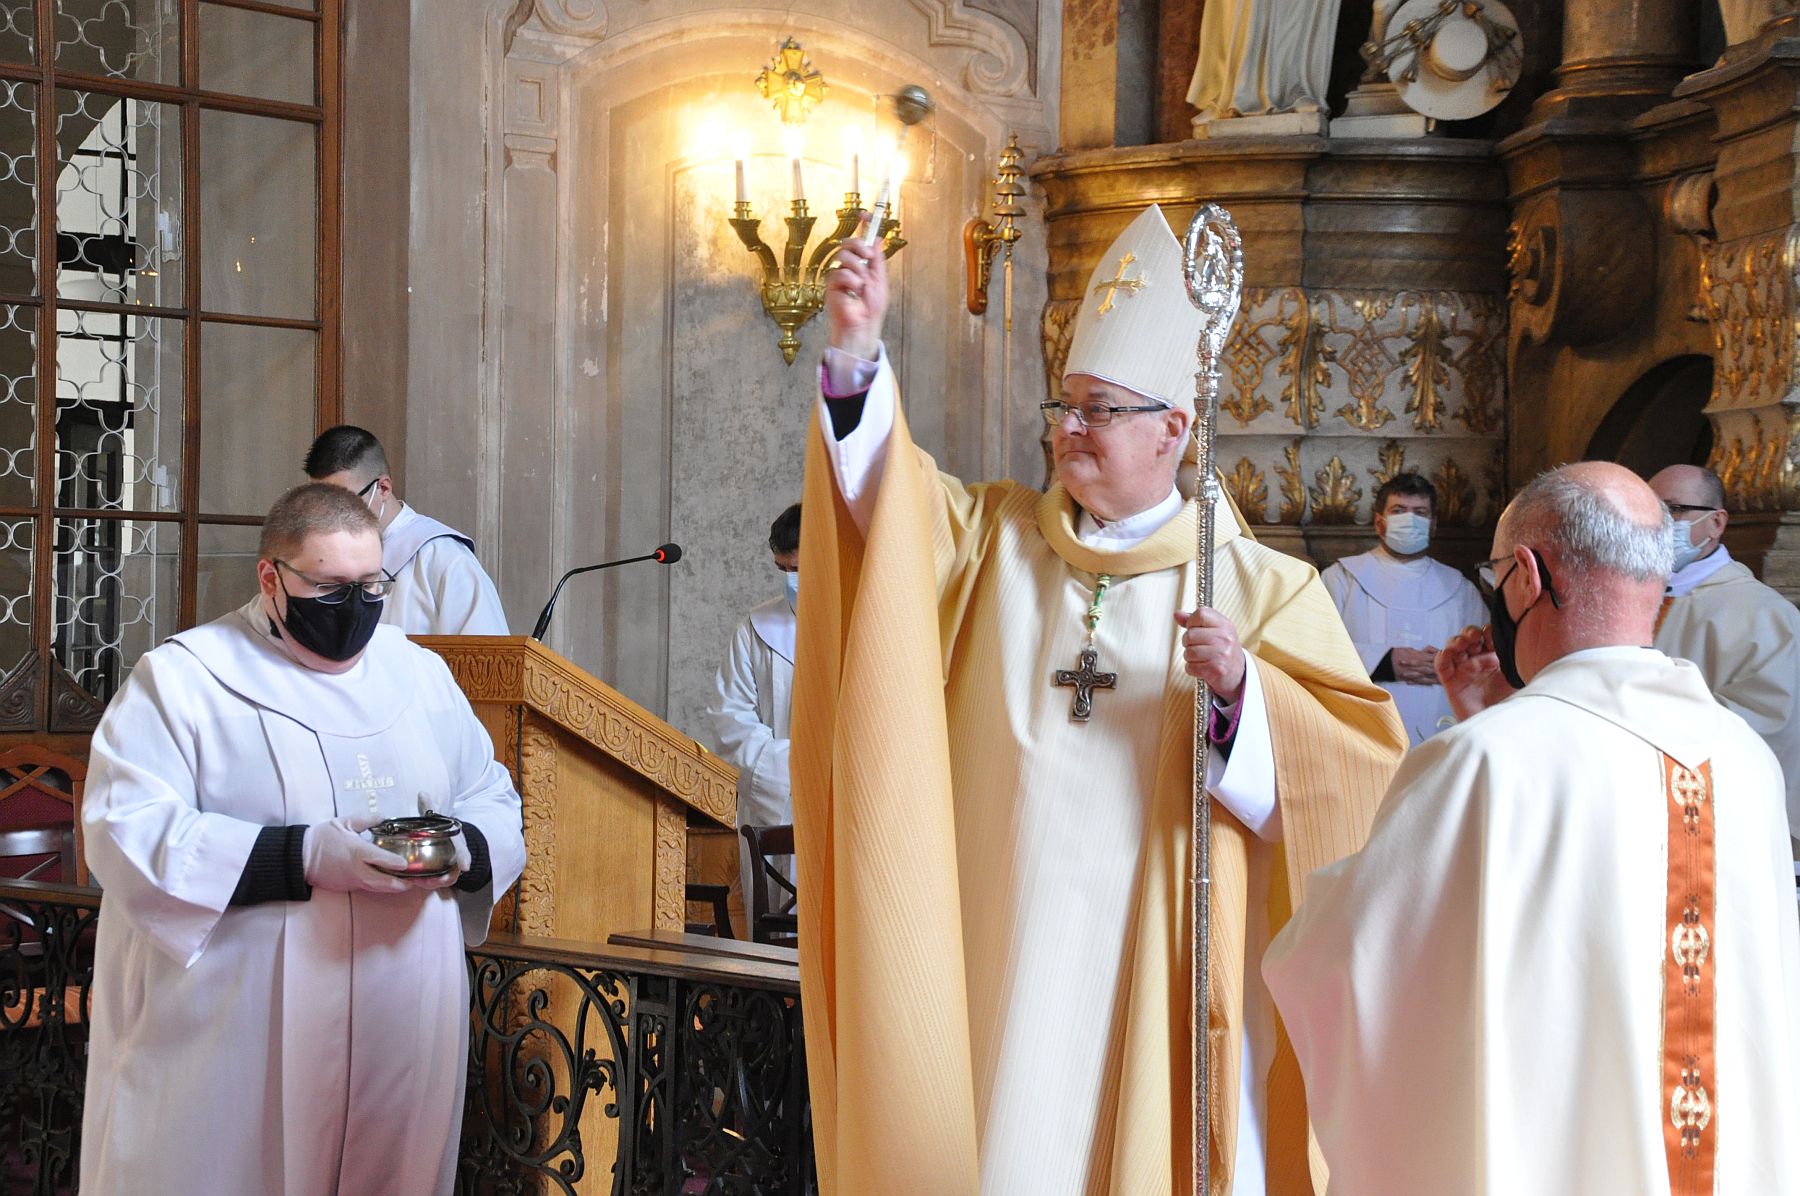 Húsvétvasárnap - püspöki szentmise Krisztus feltámadásának ünnepén